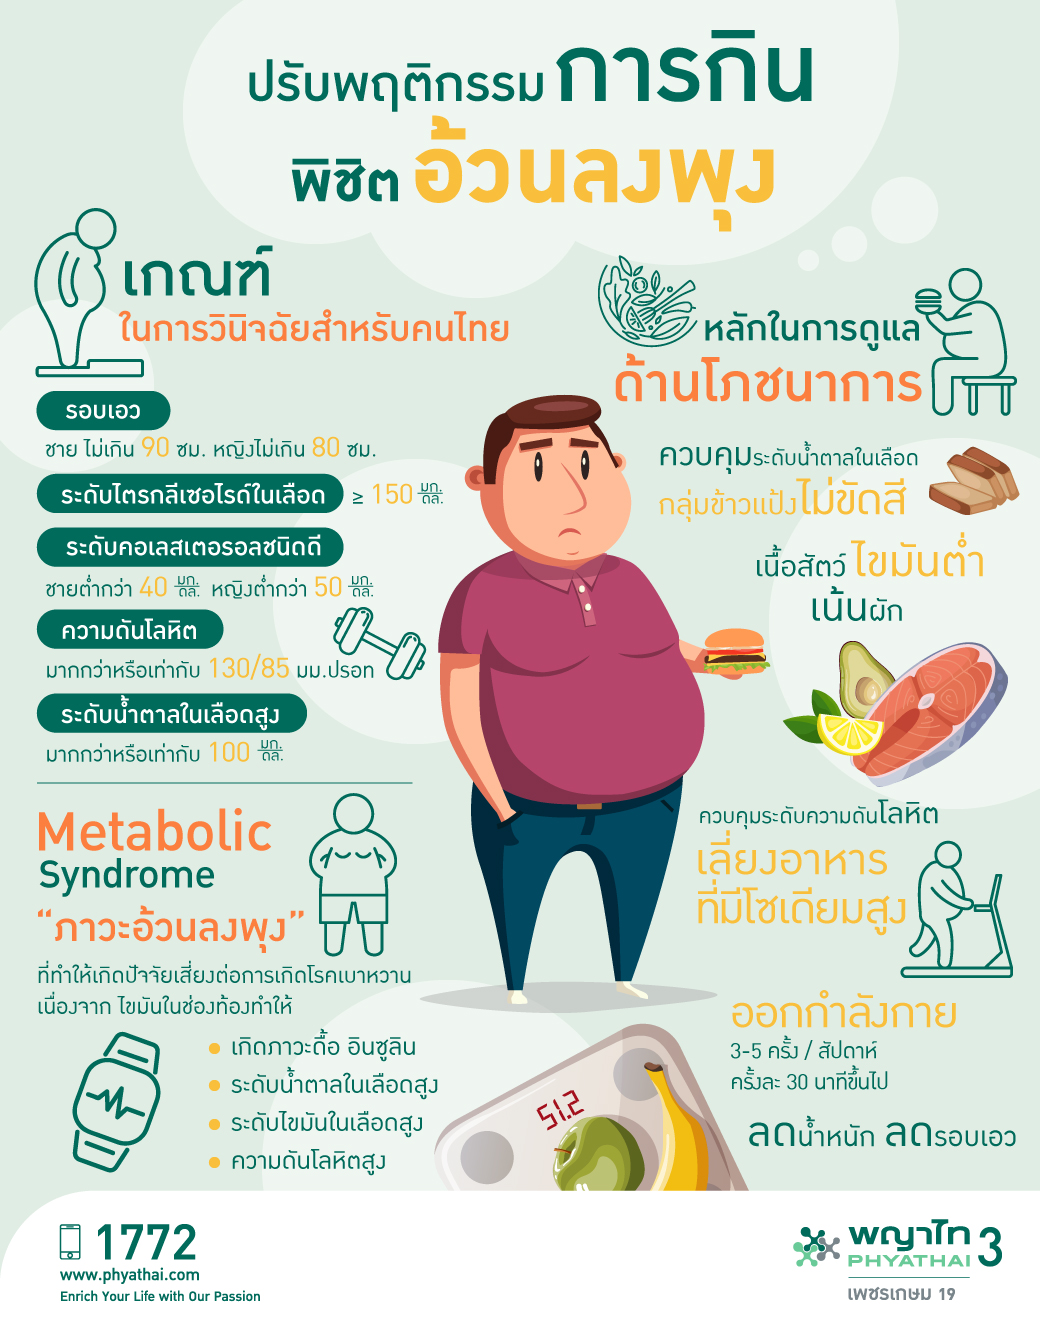 โรคอ้วน 6 ประเภท